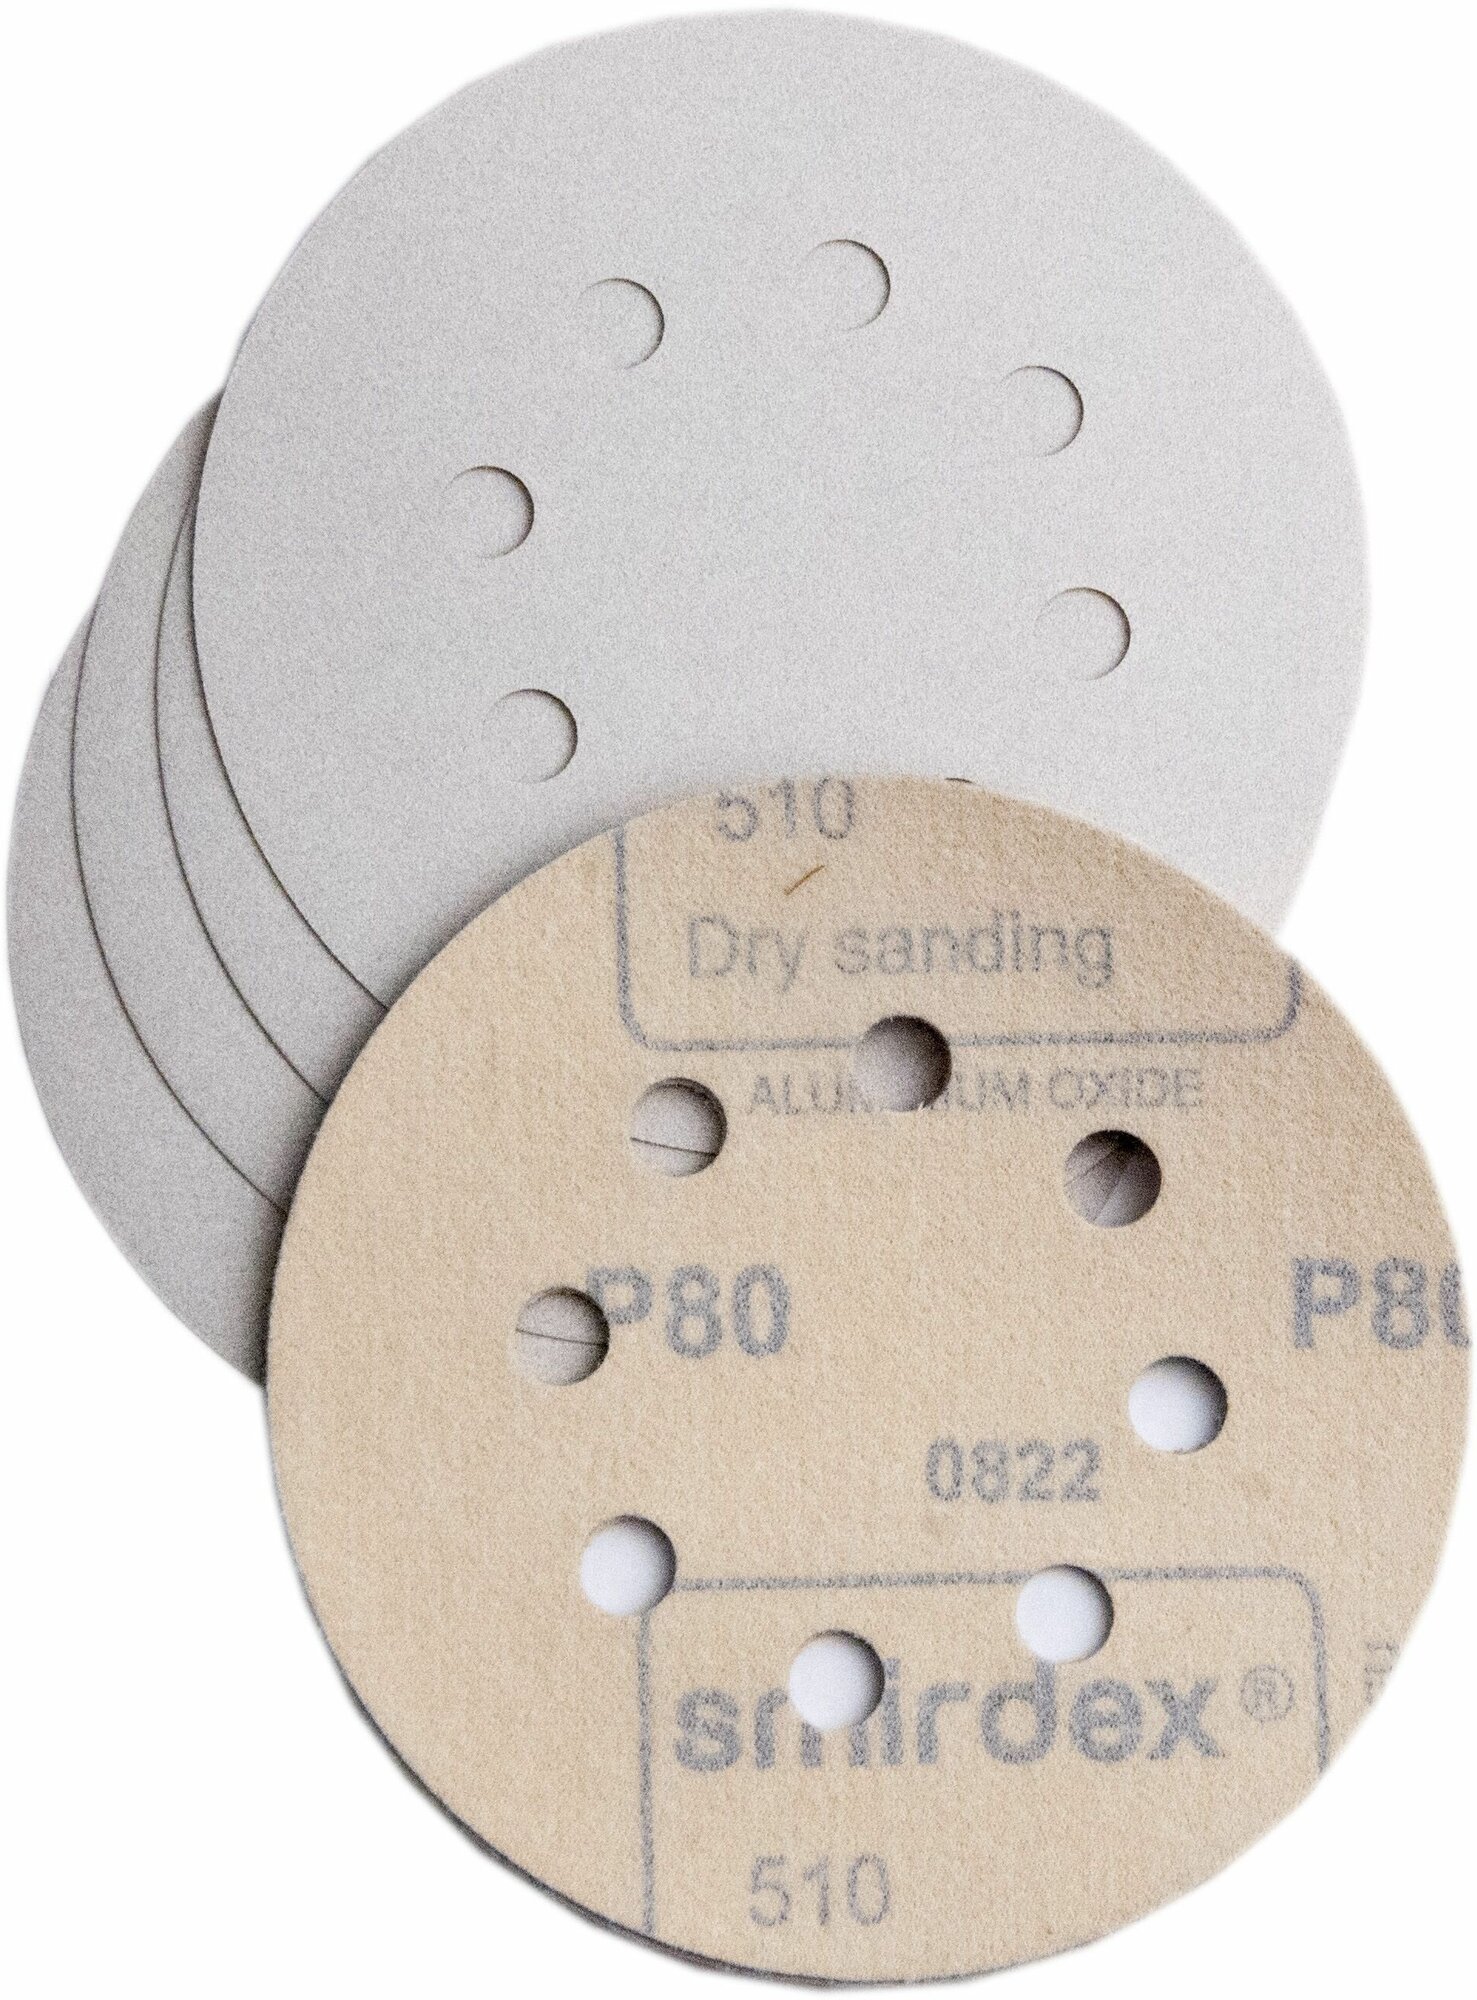 Абразивный шлифовальный круг на липучке Smirdex 510 White, D*125мм, 8 отв, P80, 20 шт.